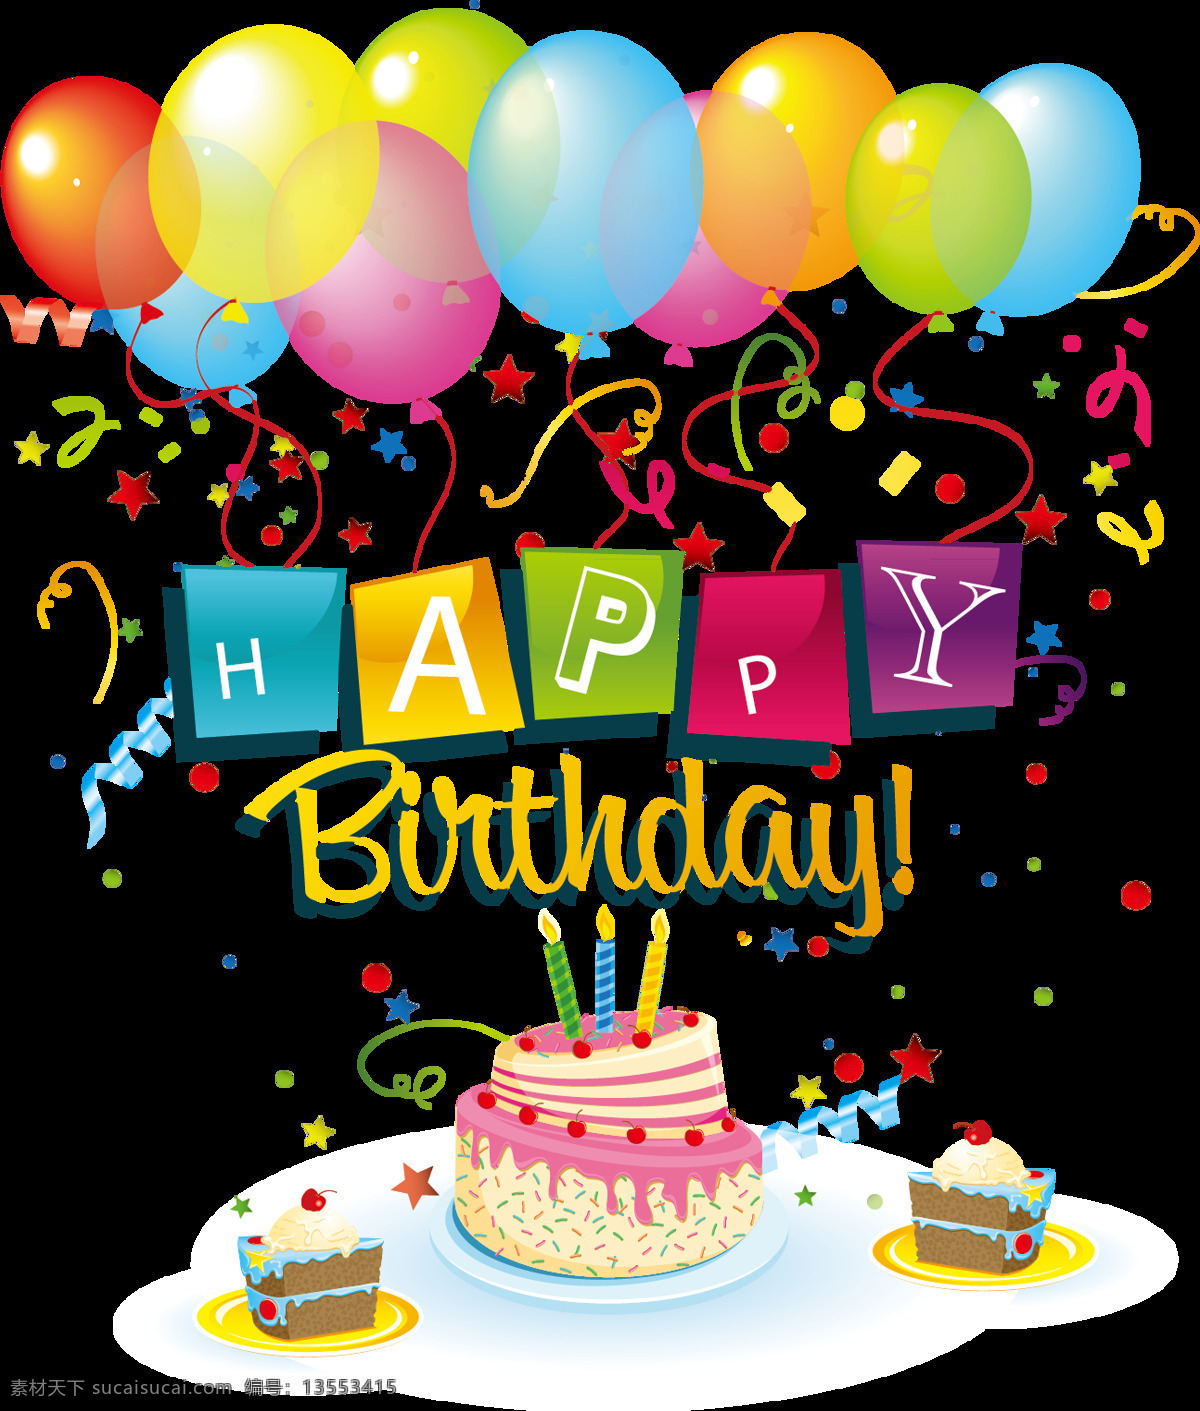 庆祝 生日 快乐 氢气球 创意 生日蛋糕 大全 蛋糕图片 设计素材 节日元素 png素材 喜庆元素 节日气氛素材 生日气氛素材 庆祝生日 生日快乐